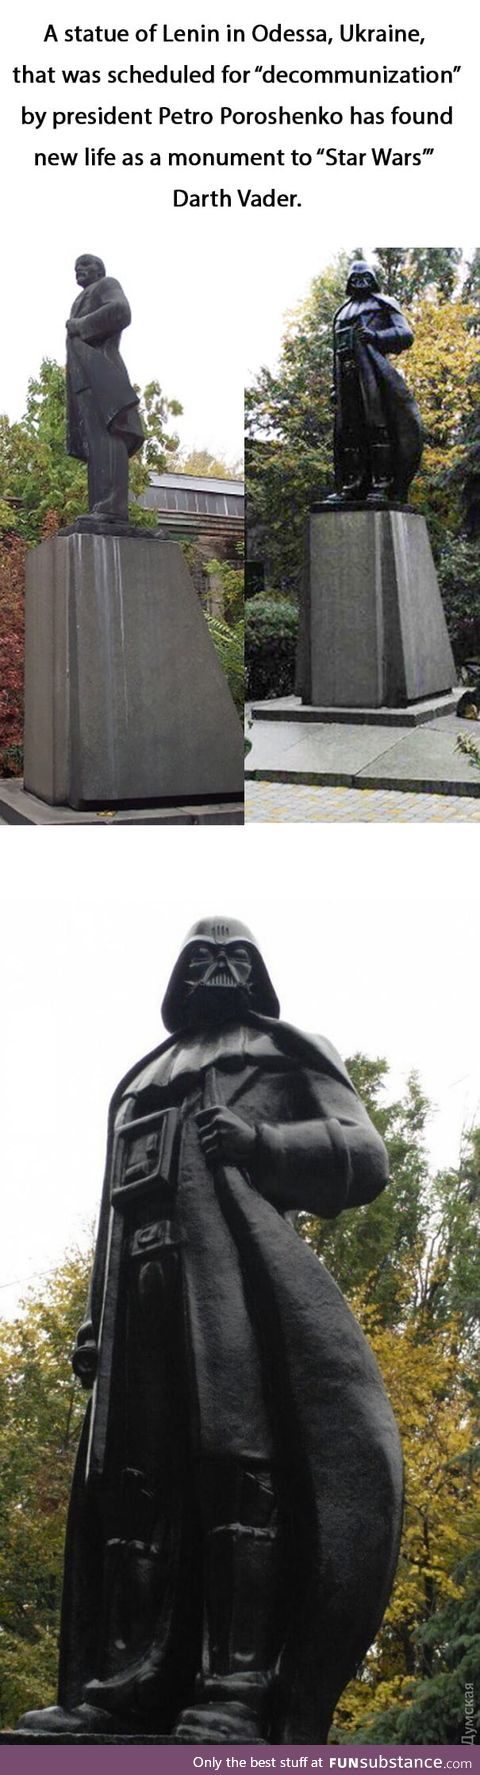 Lenin statue turned into darth vader !